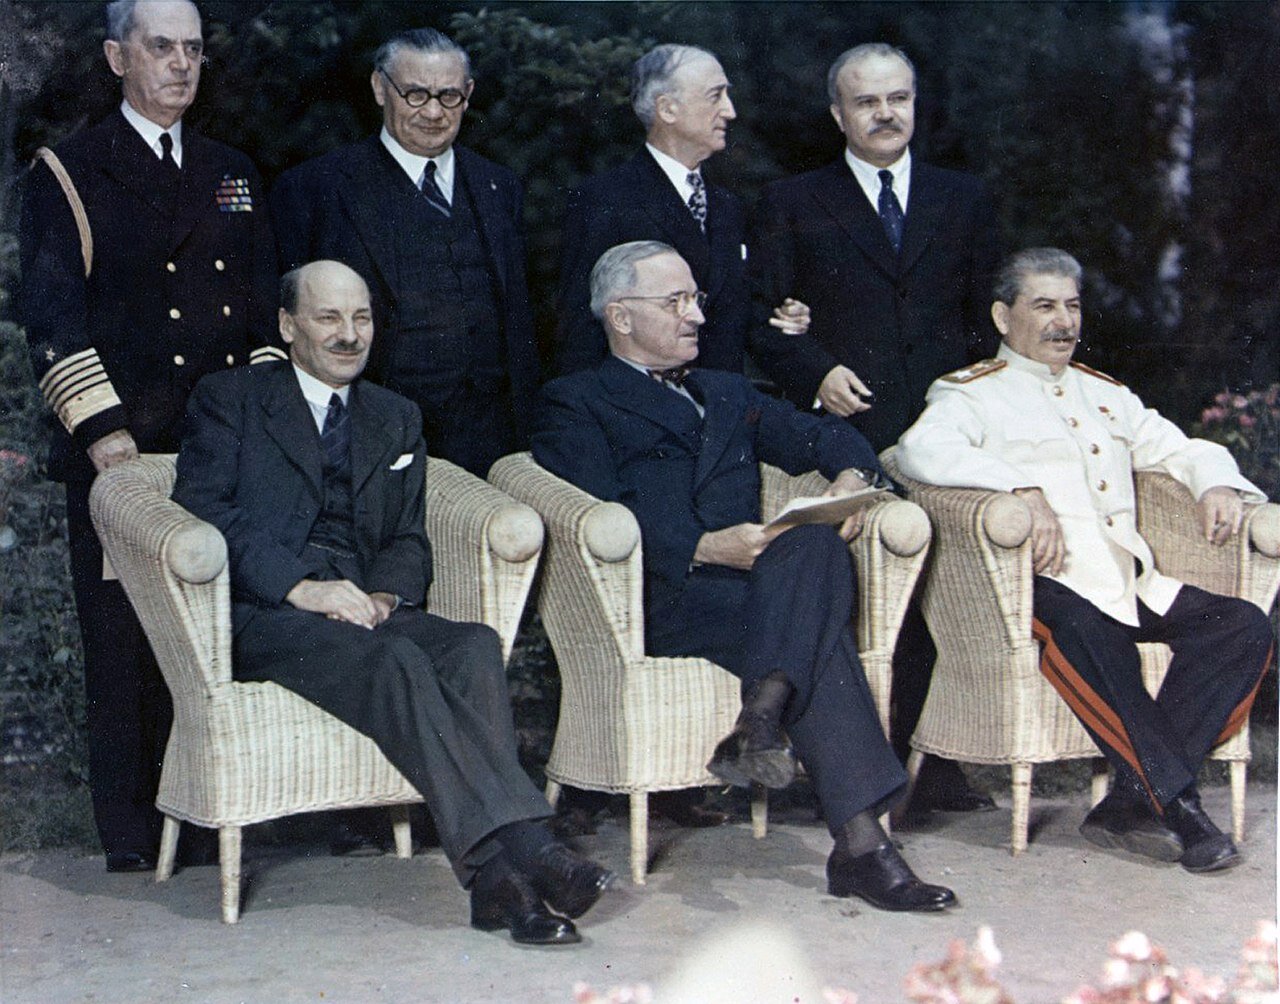 Zdjęcie przedstawia trzech mężczyzn, którzy siedzą na krzesłach. Dwaj pierwsi od lewej ubrani są w garnitury. Mężczyzna po prawej ubrany jest w jasny mundur. Za mężczyznami stoją czterej mężczyźni. Pierwszy od lewej ubrany jest w mundur, pozostali w garnitury.